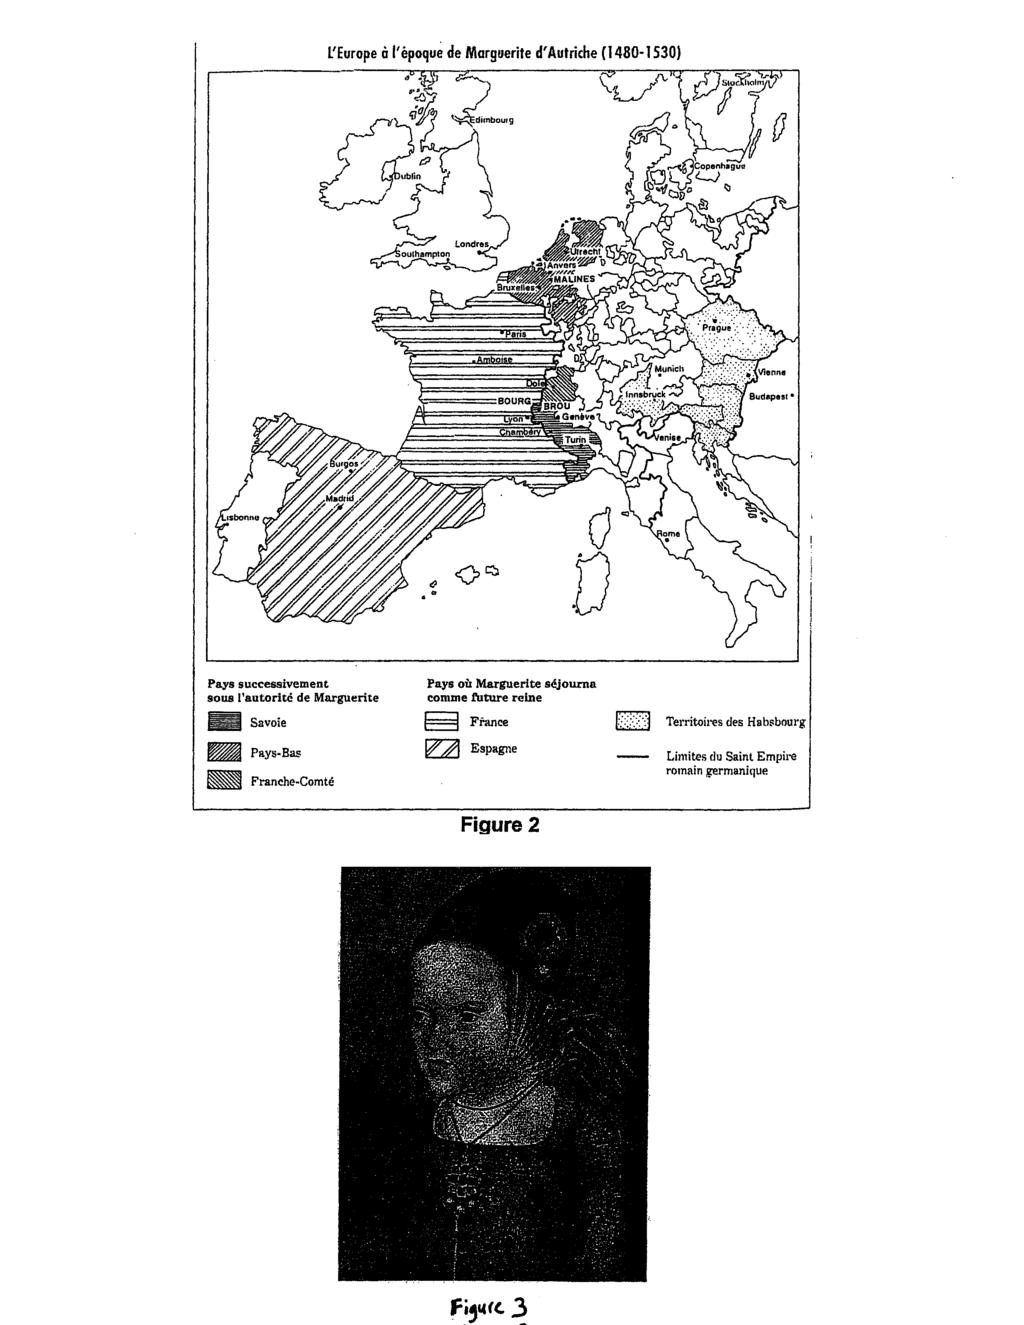 L'Europe à l'époqué de Marguerite d'autriche (1480-1530).----.:.~ ) r-i' ~_.